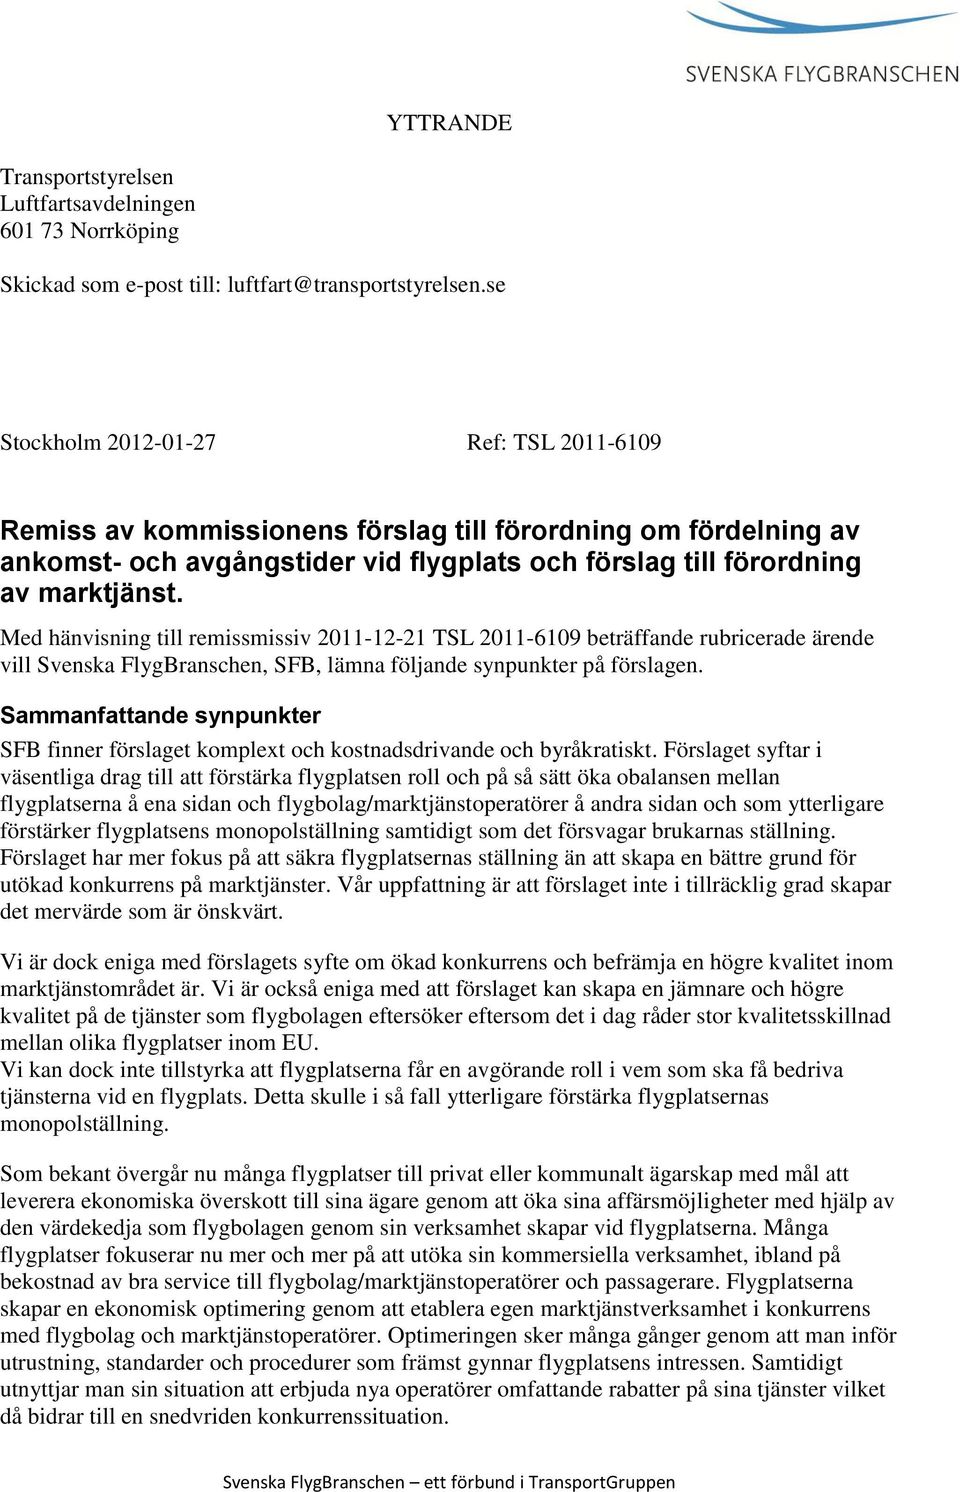 Med hänvisning till remissmissiv 2011-12-21 TSL 2011-6109 beträffande rubricerade ärende vill Svenska FlygBranschen, SFB, lämna följande synpunkter på förslagen.